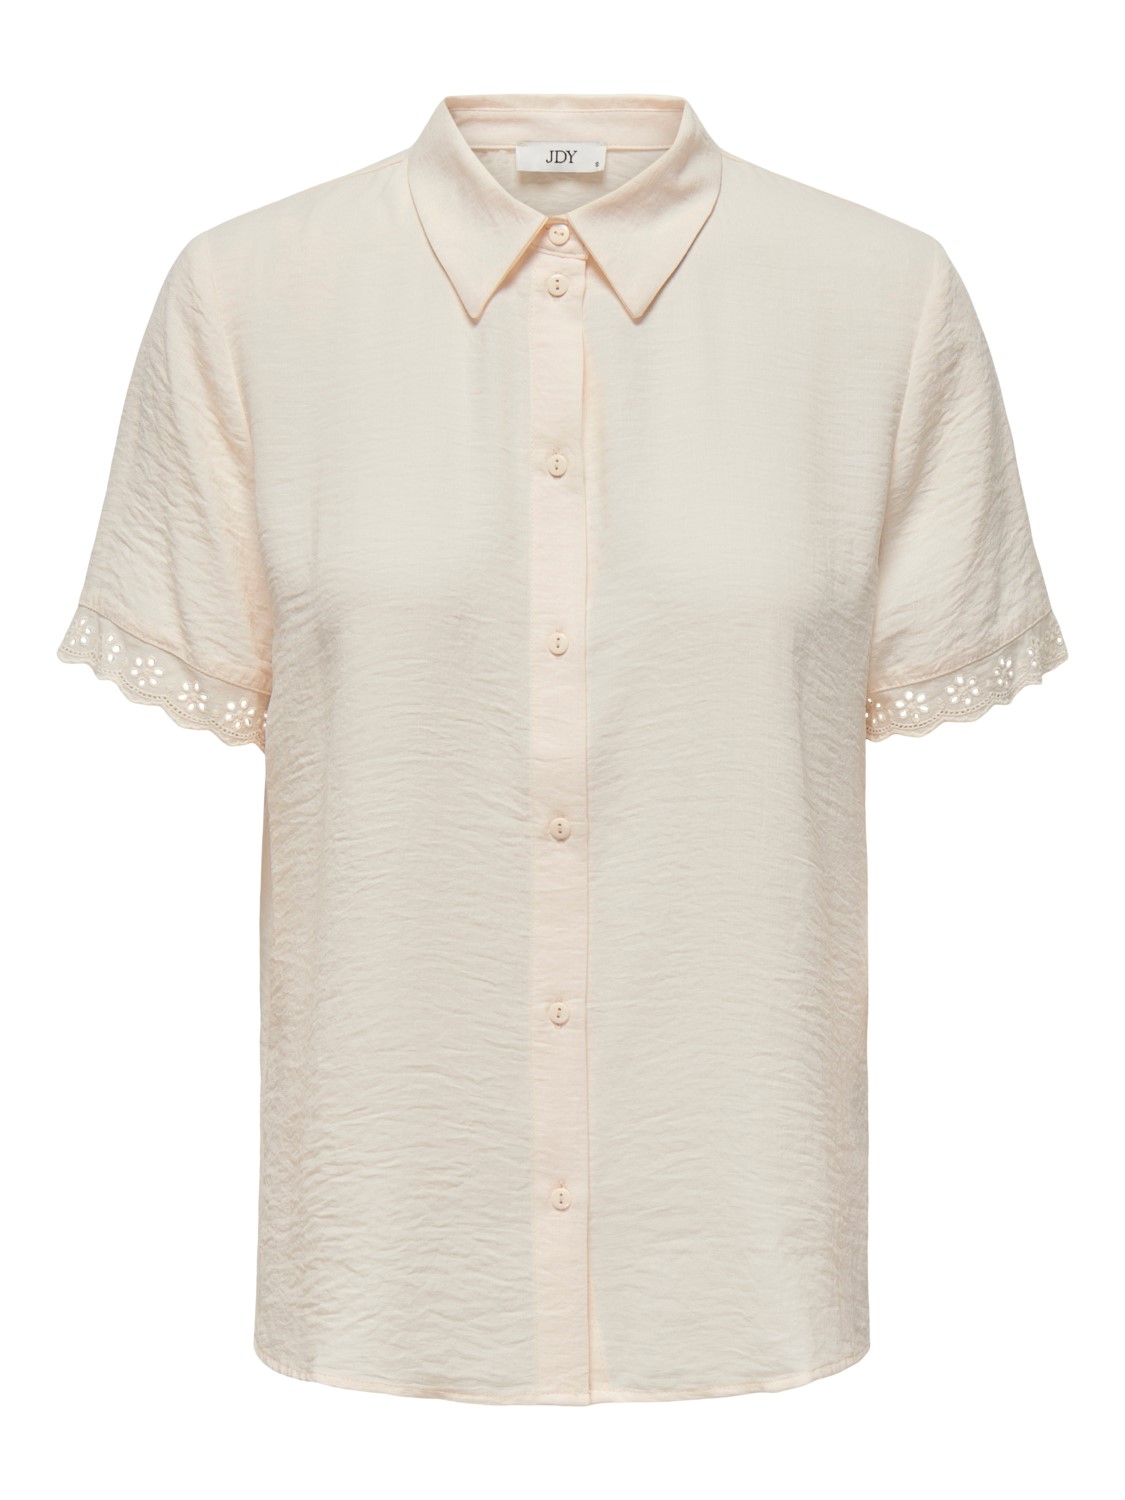 JDY Rachel S/S Lace Shirt, lys beige